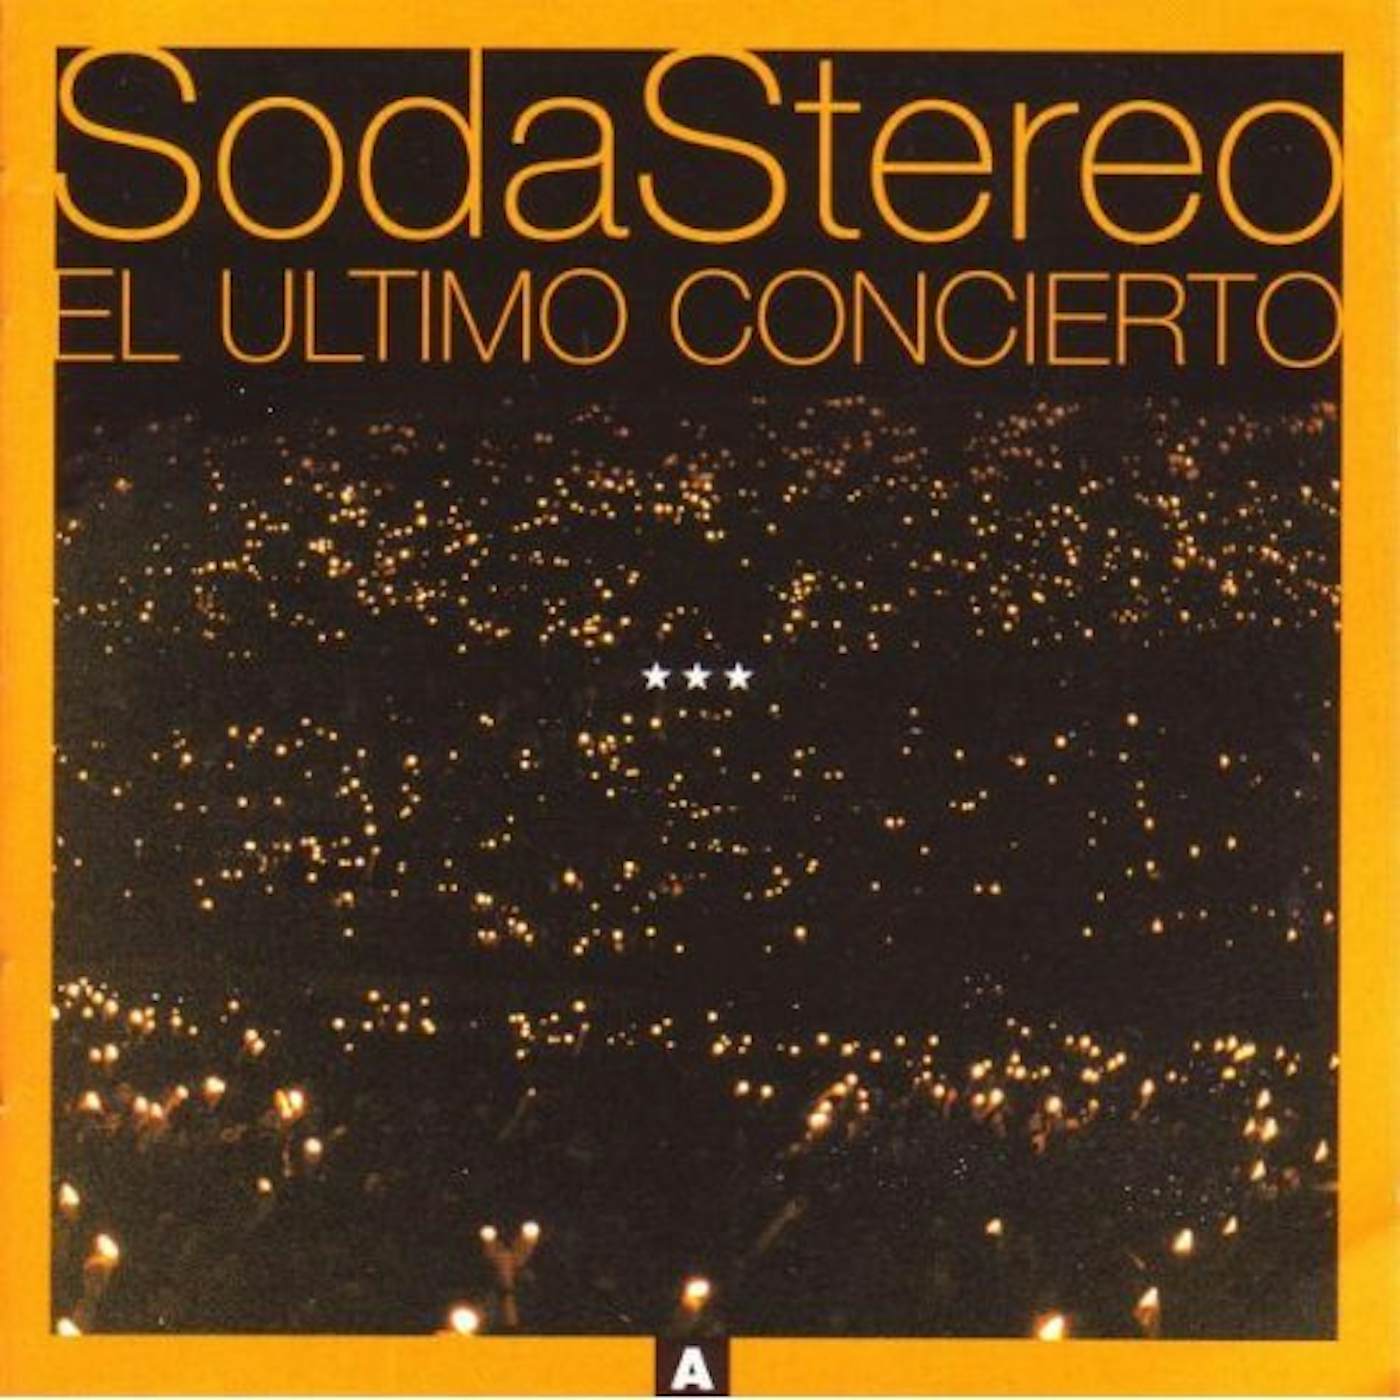 Soda Stereo EL ULTIMO CONCIERTO A CD